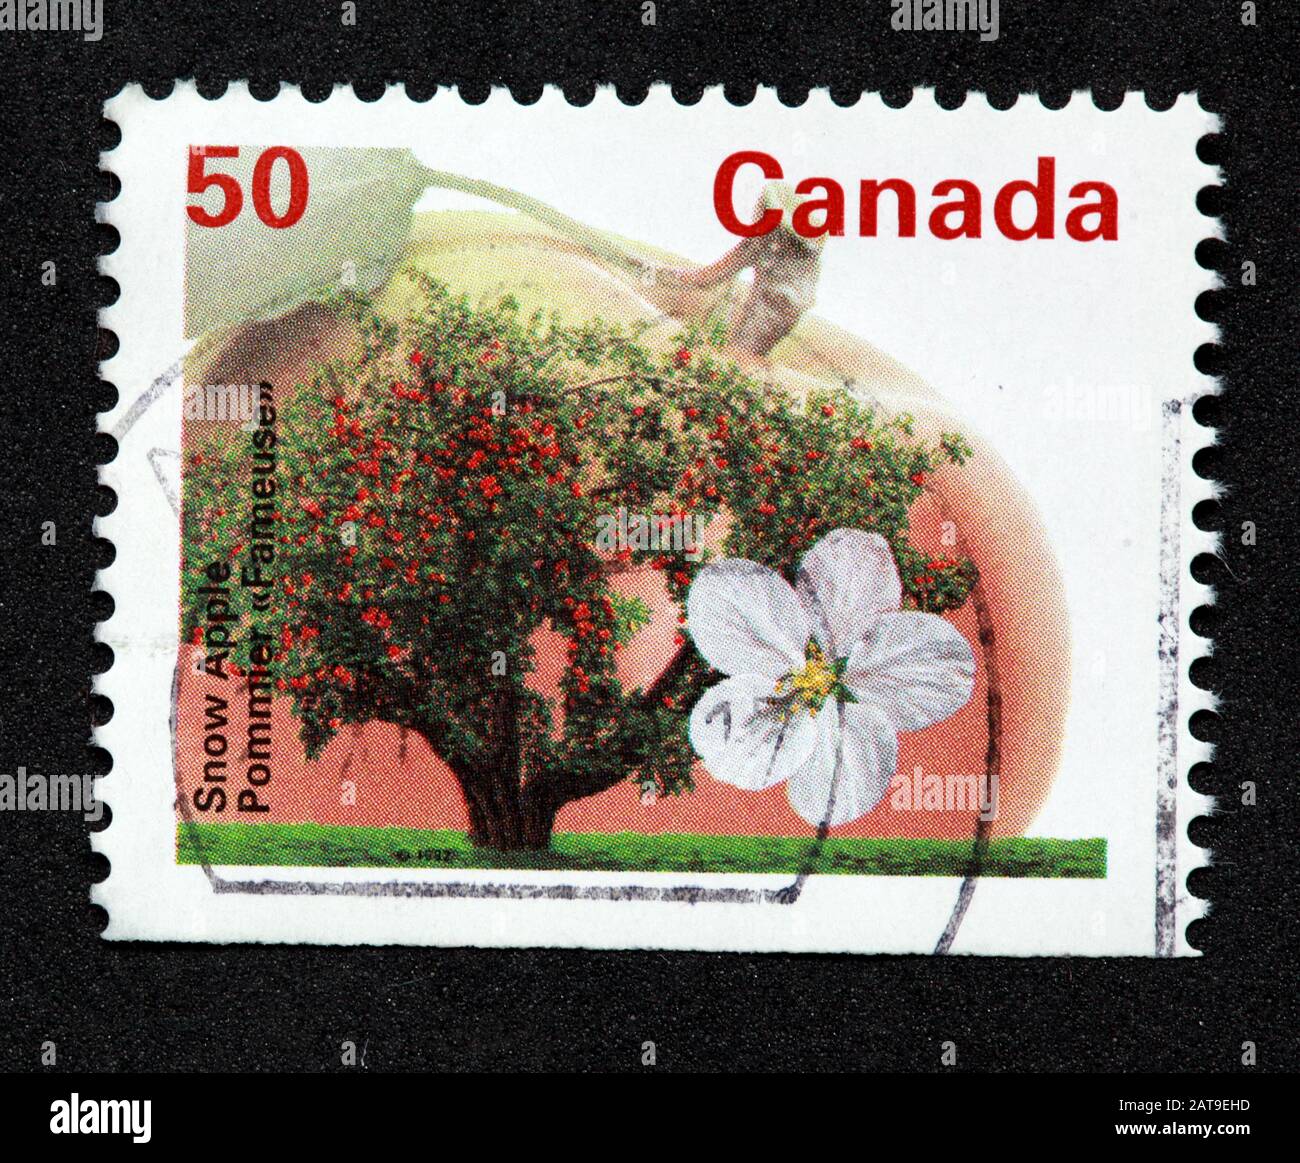 Timbre canadien, Timbre Canada, postes Canada, timbre utilisé, Canada 50 c, 50 %, pomme de neige, fleur, arbre Banque D'Images